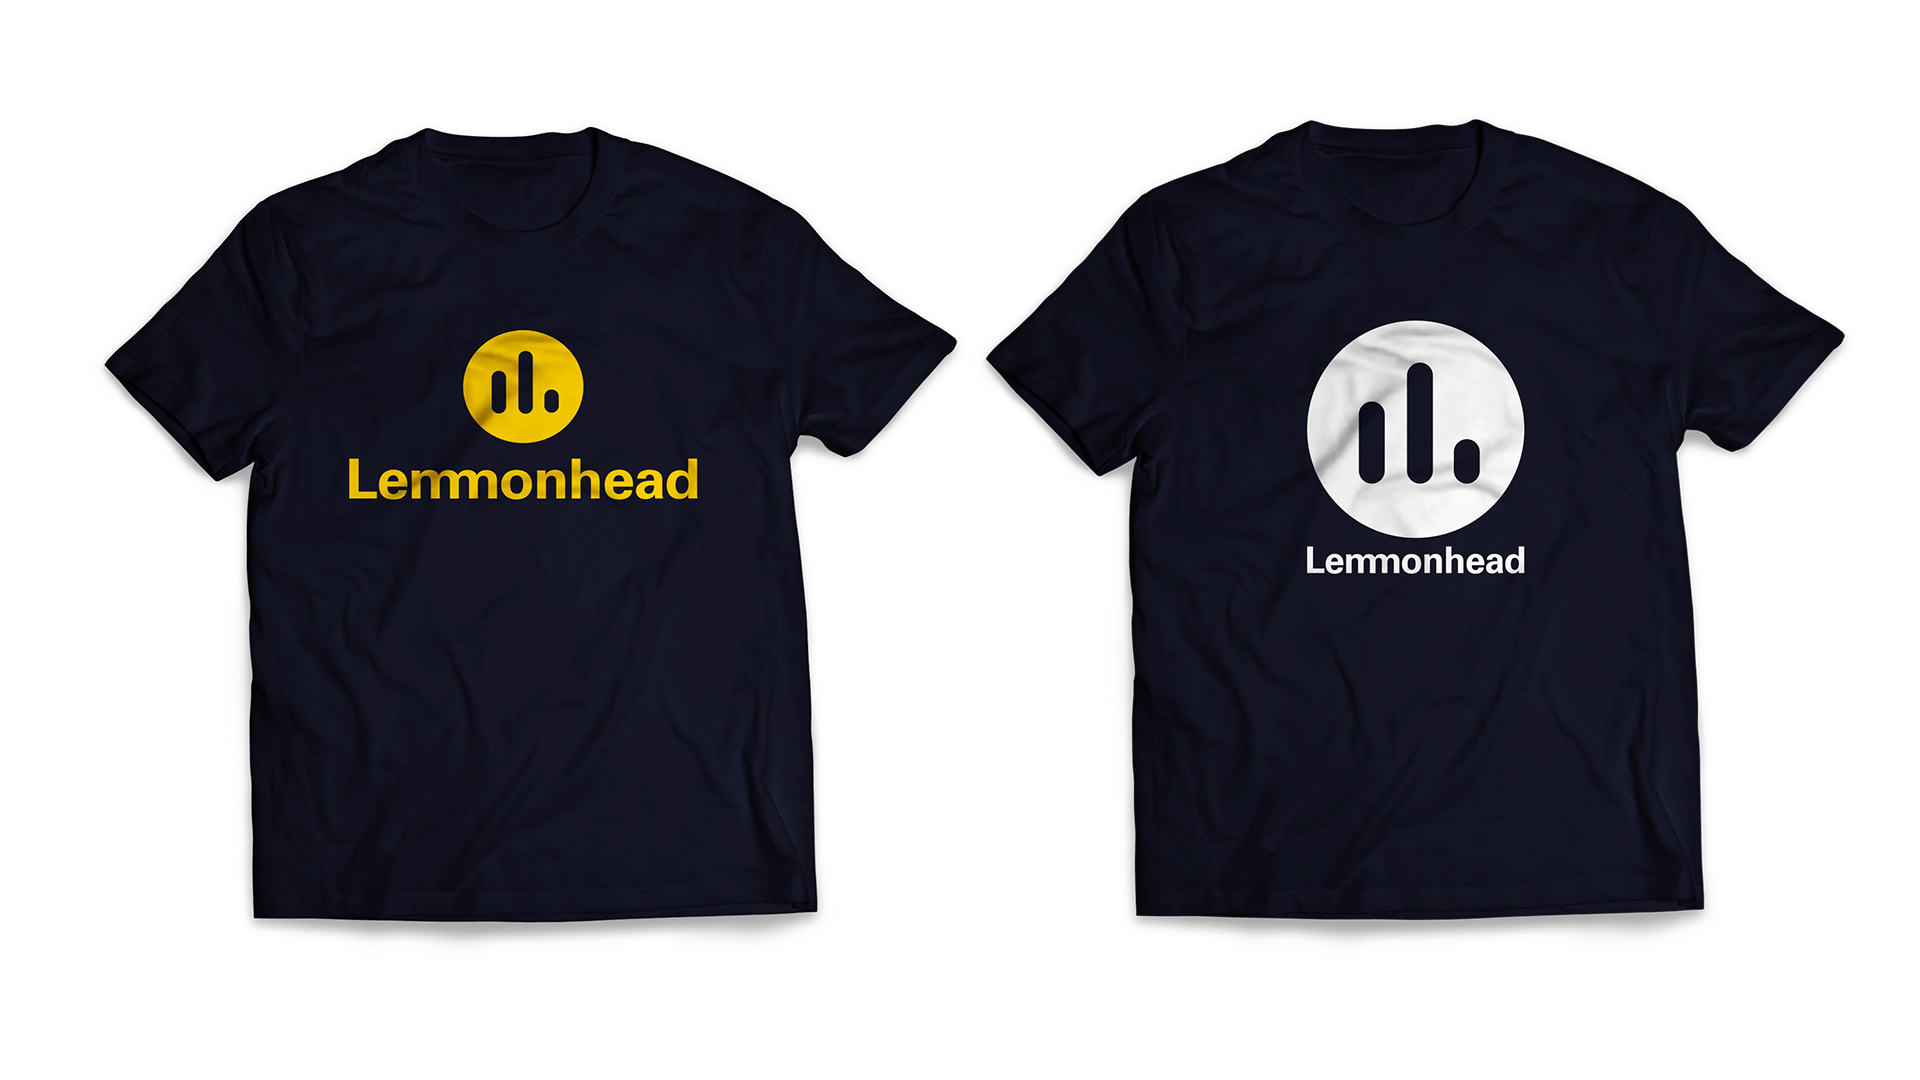 Lemmonhead Publishing - T-shirt designs